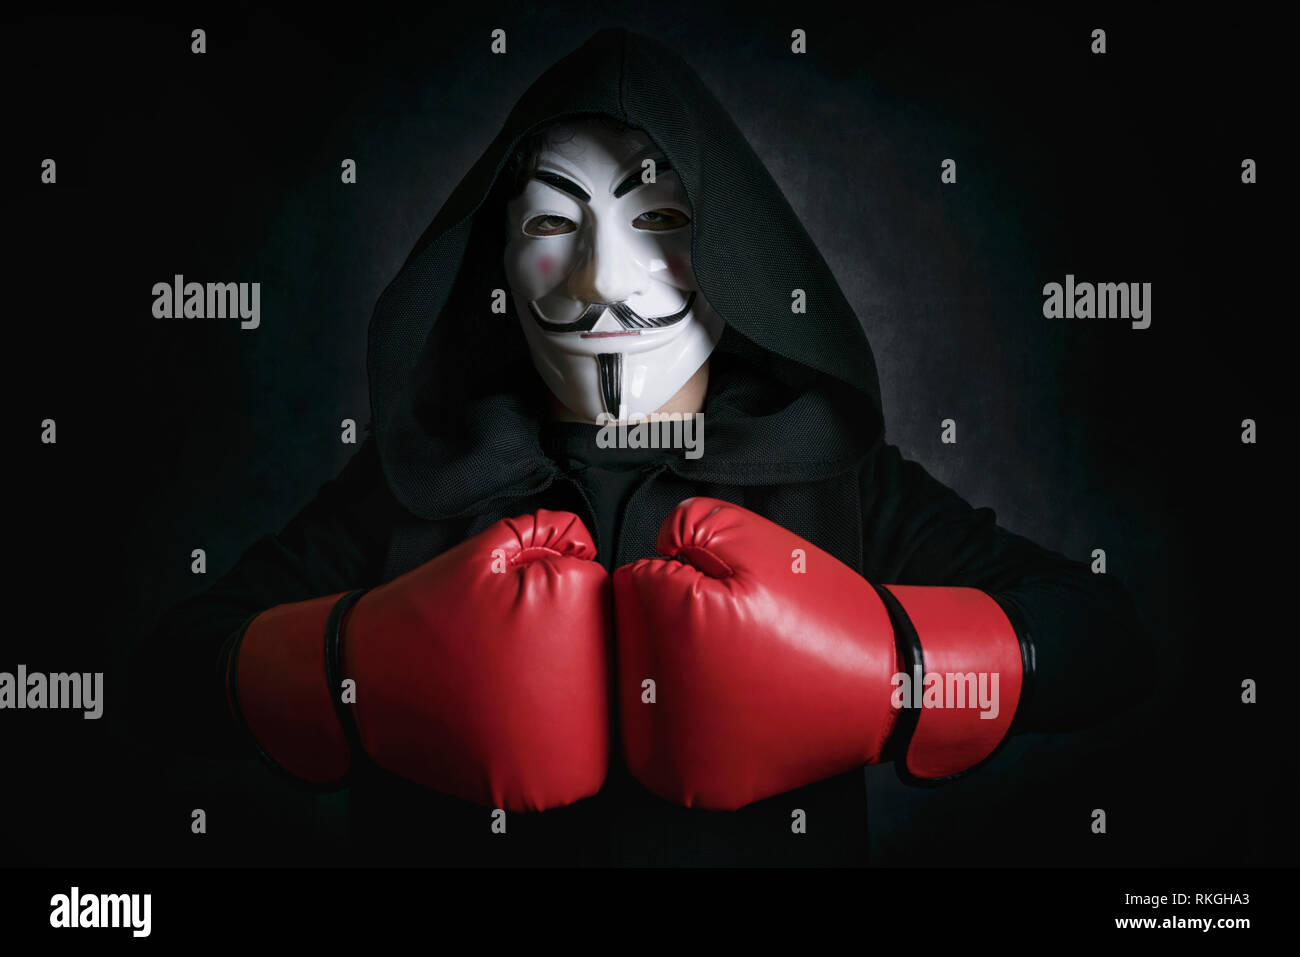 L'homme anonyme de masquage) et des gants de boxe sur fond noir Banque D'Images